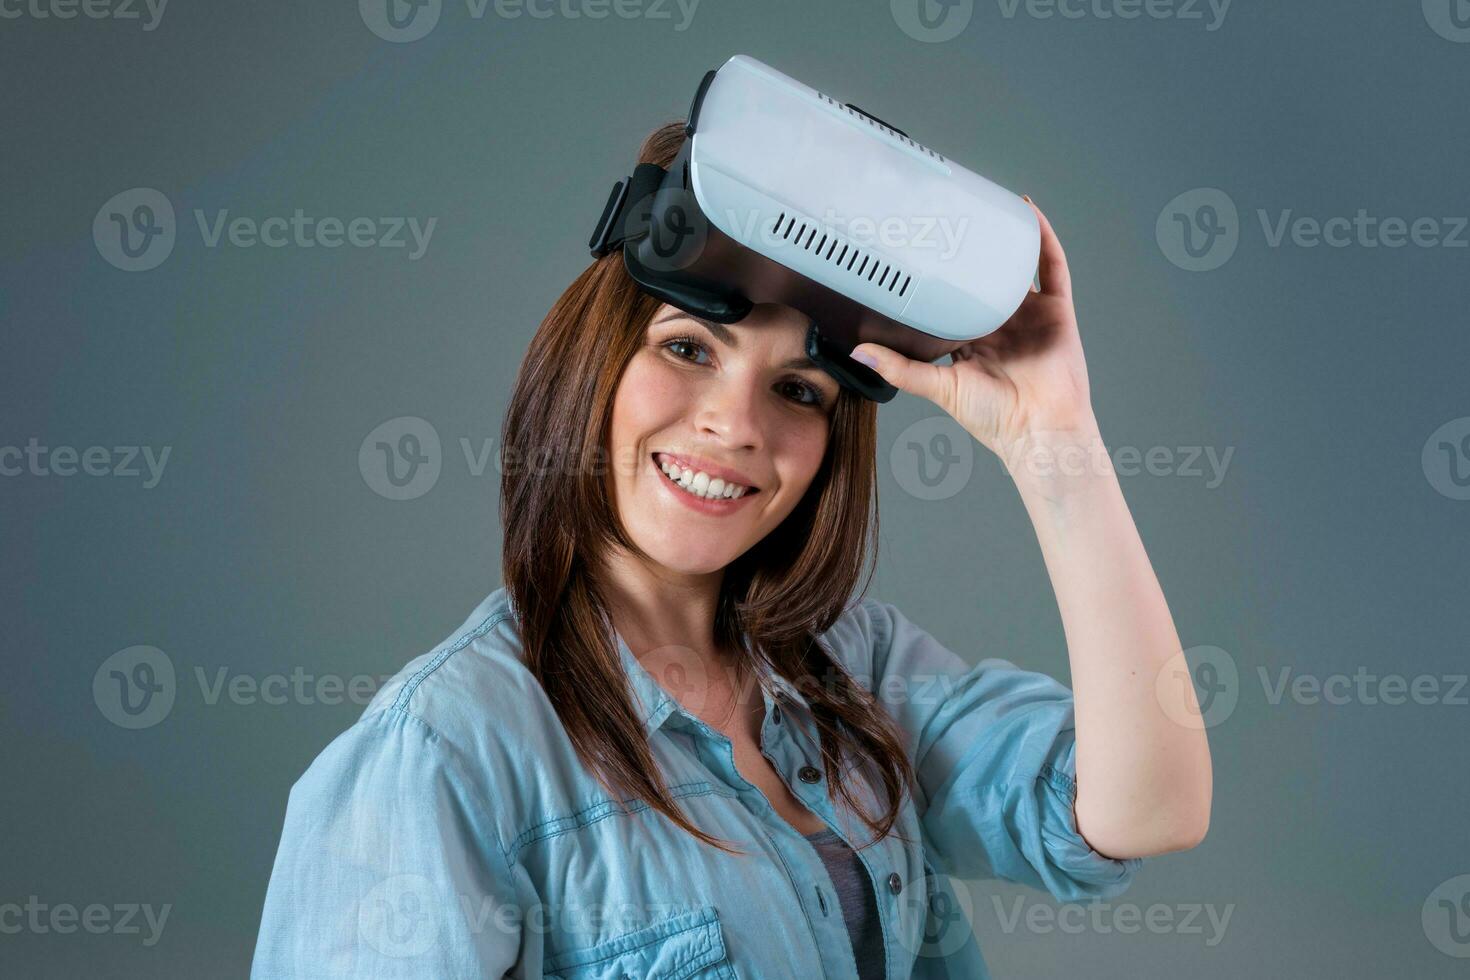 retrato de contento joven hermosa niña consiguiendo experiencia utilizando vr-auriculares lentes de virtual realidad foto